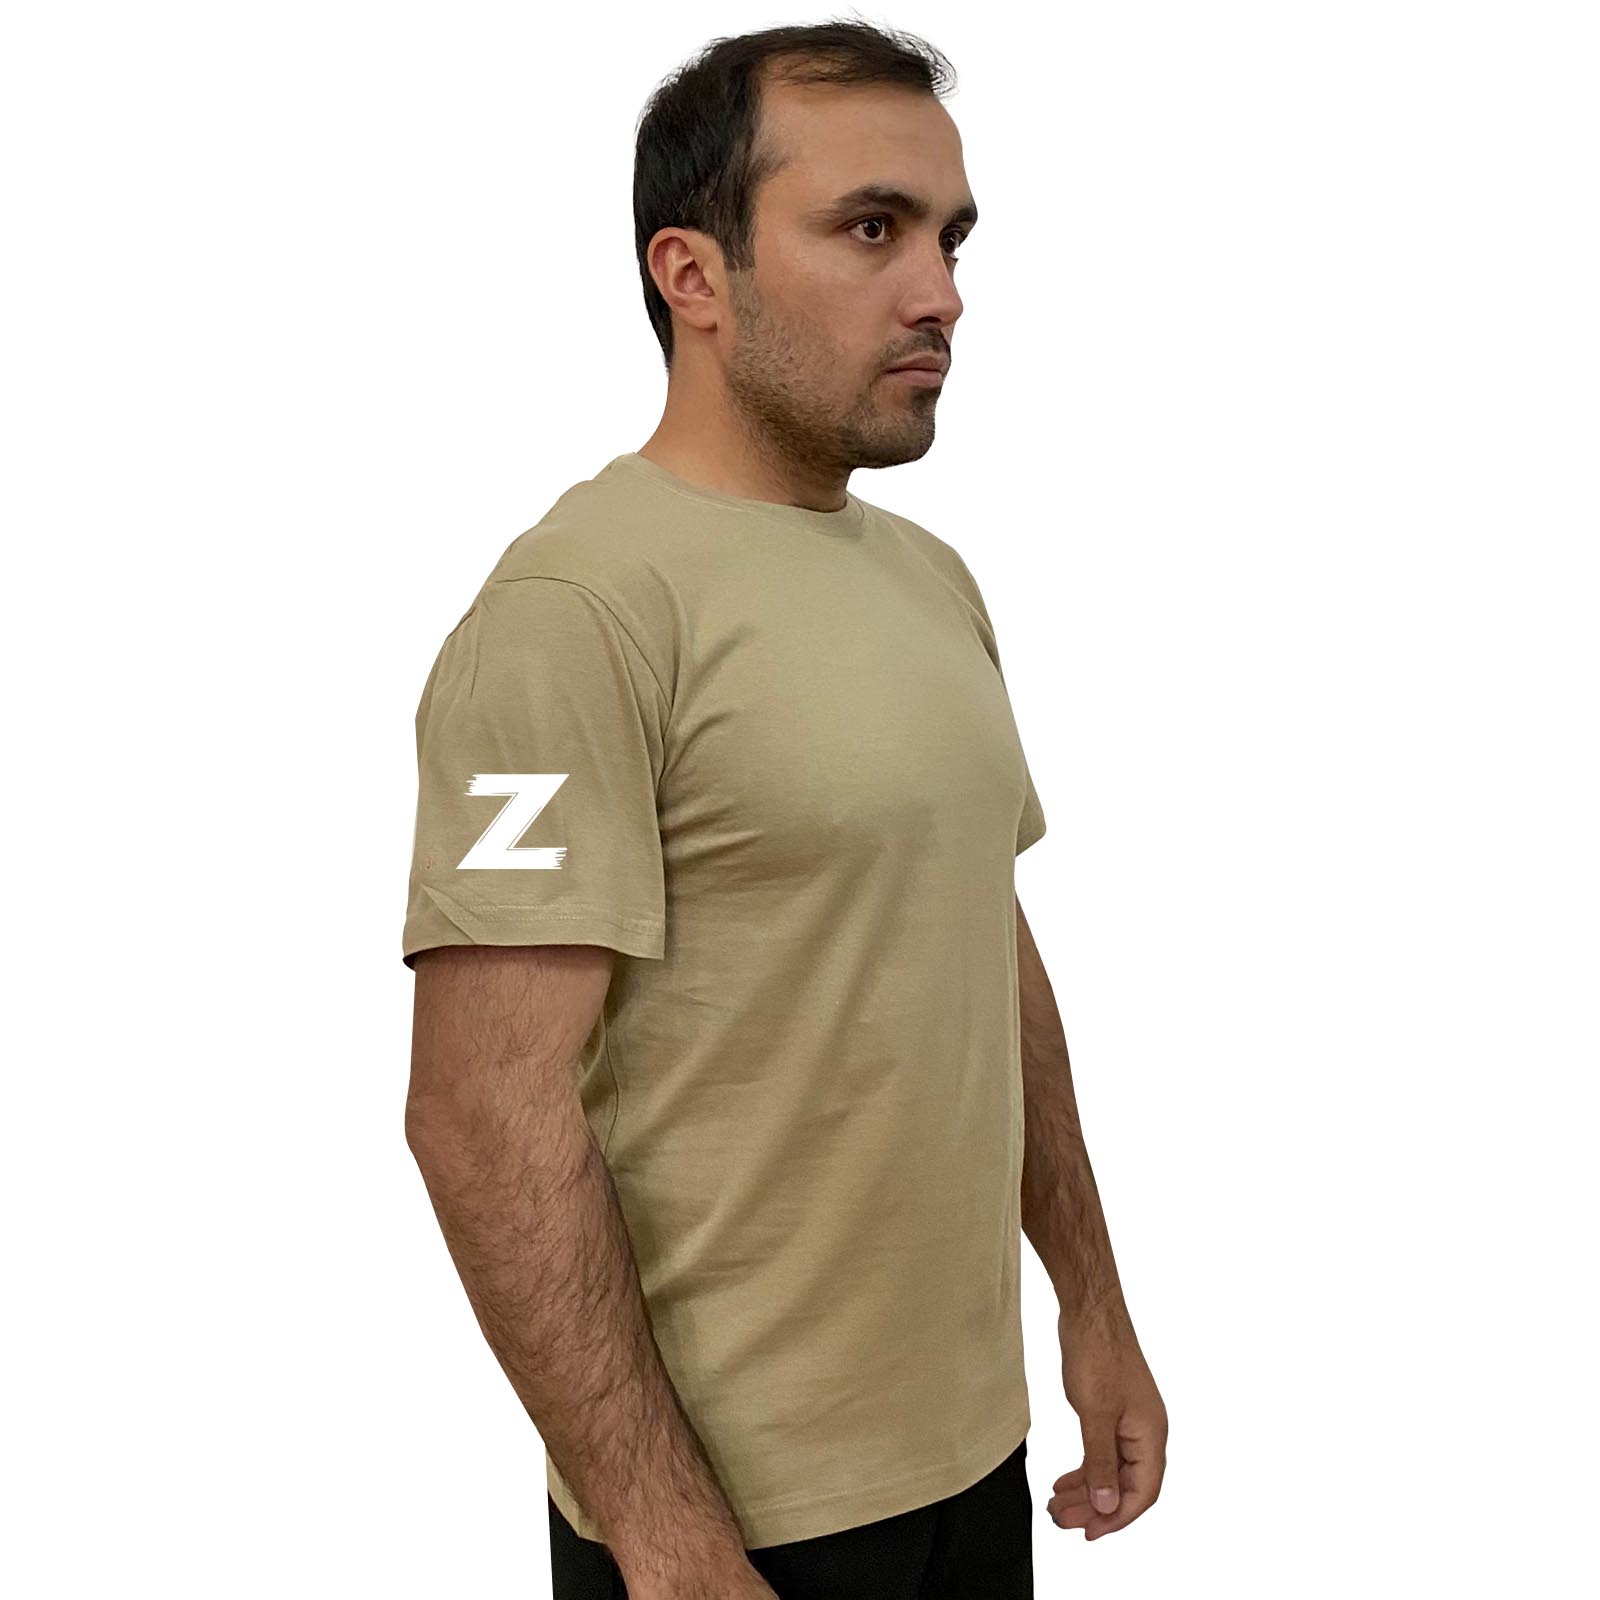 Купить хлопковую песочную футболку с литерой Z онлайн